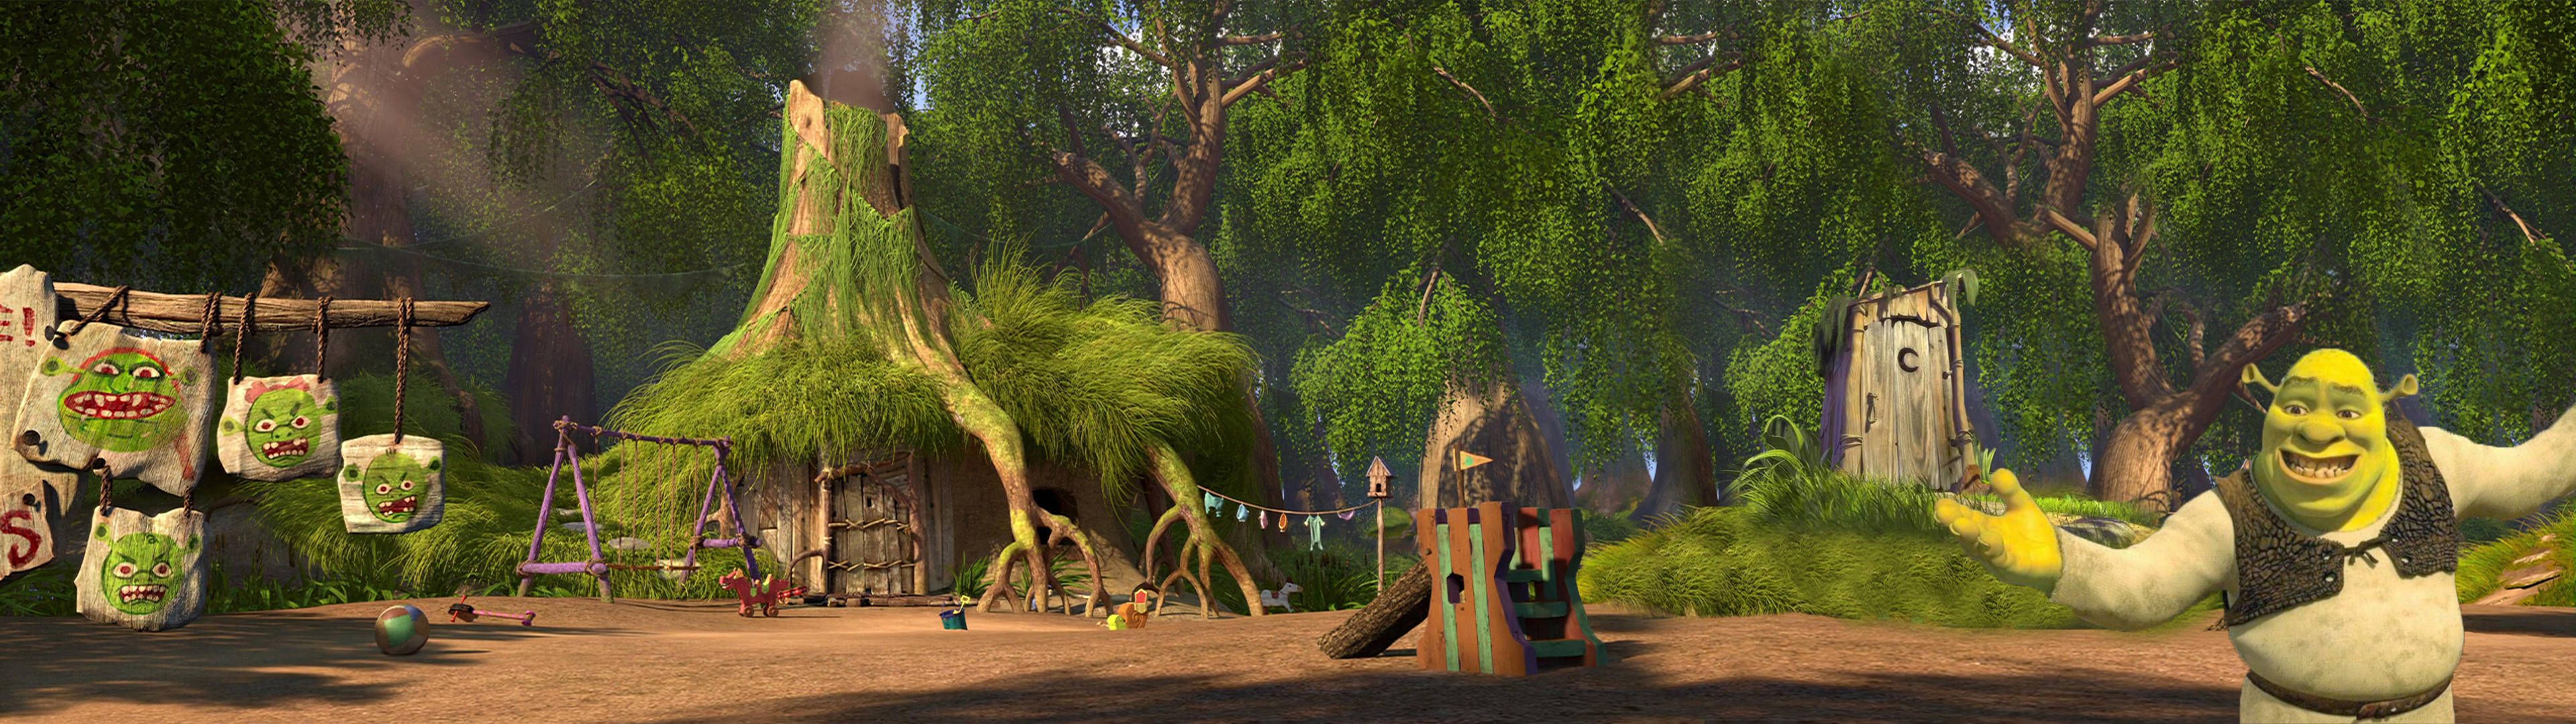 Download Shrek Panoramic View Wallpaper